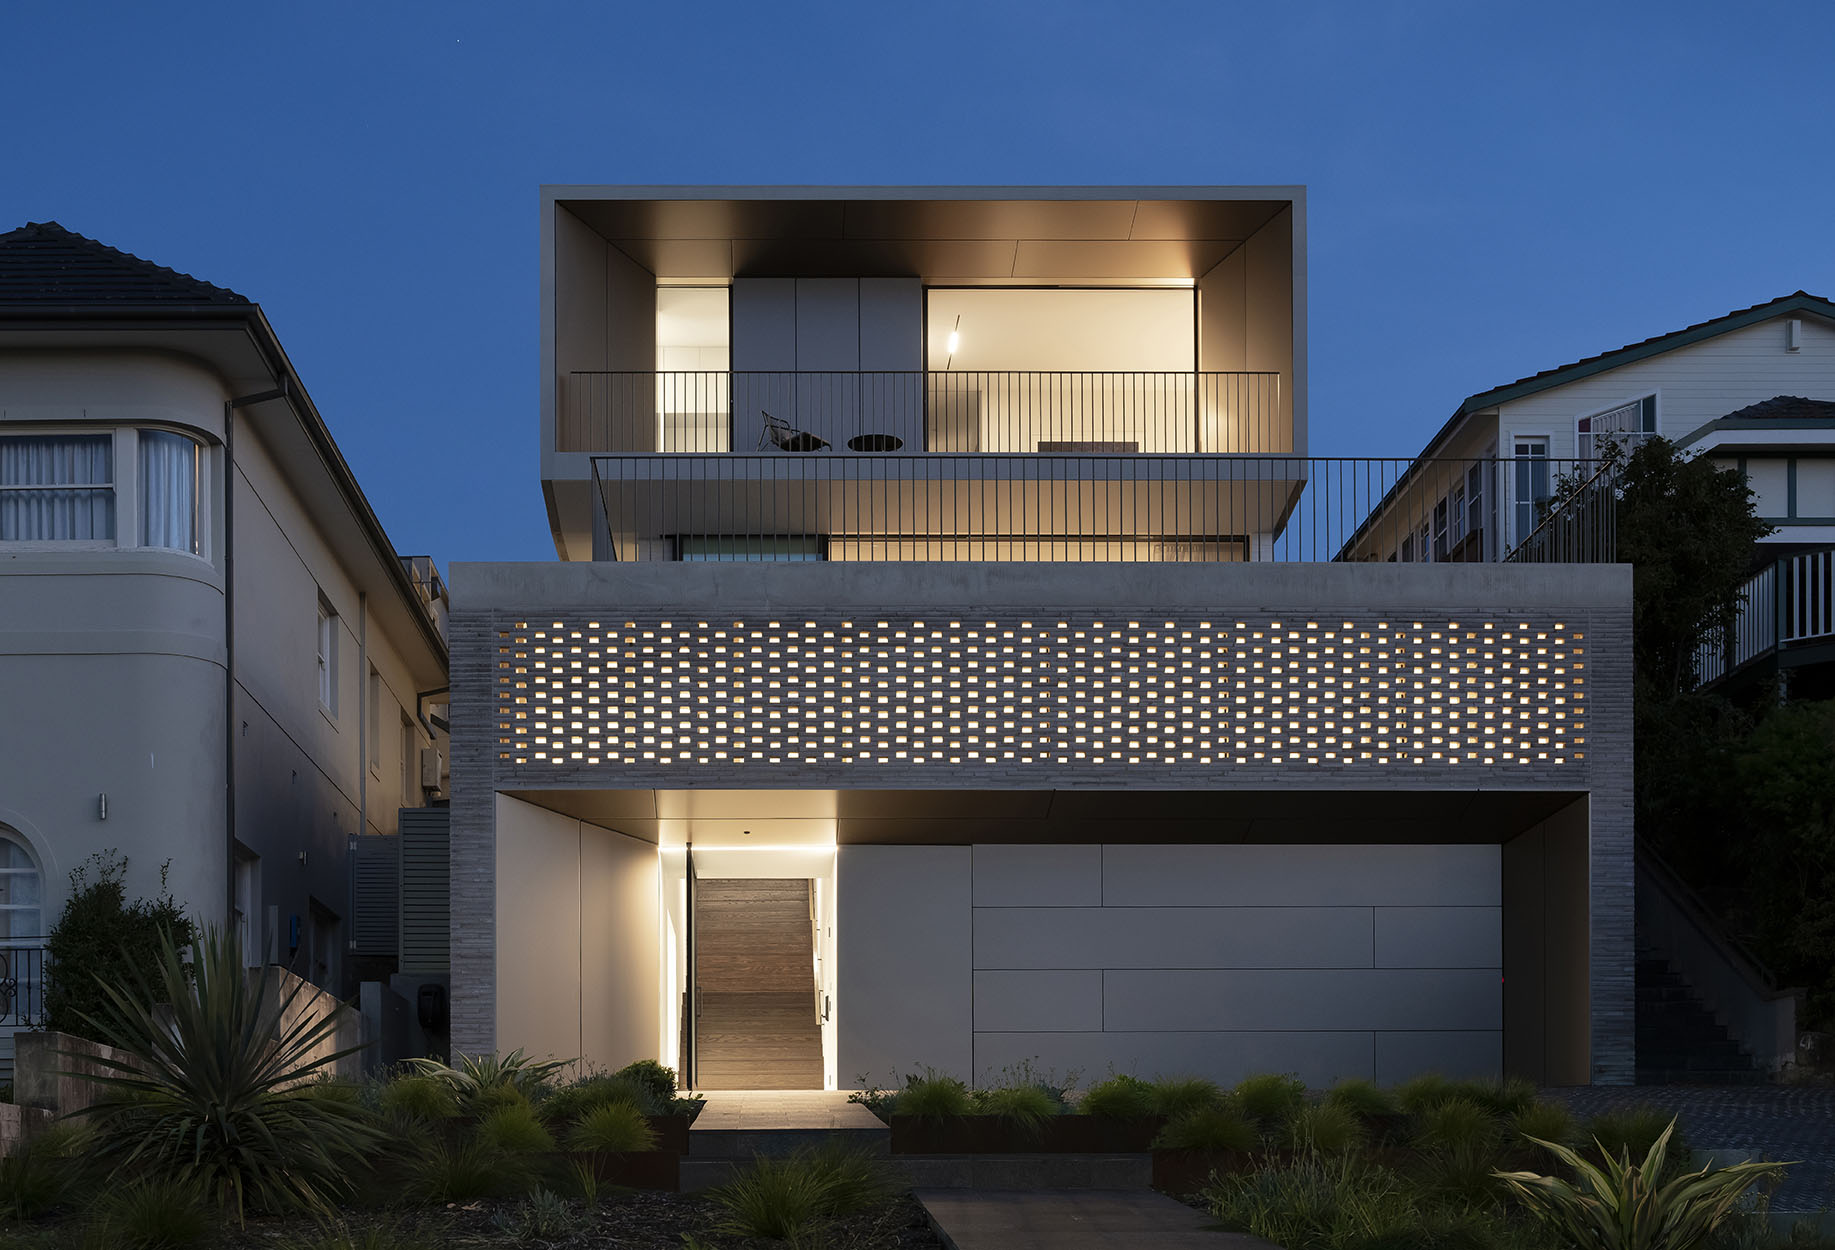 住宅建筑设计,住宅设计案例,pH+ Architects,悉尼,国外住宅设计案例,Blum